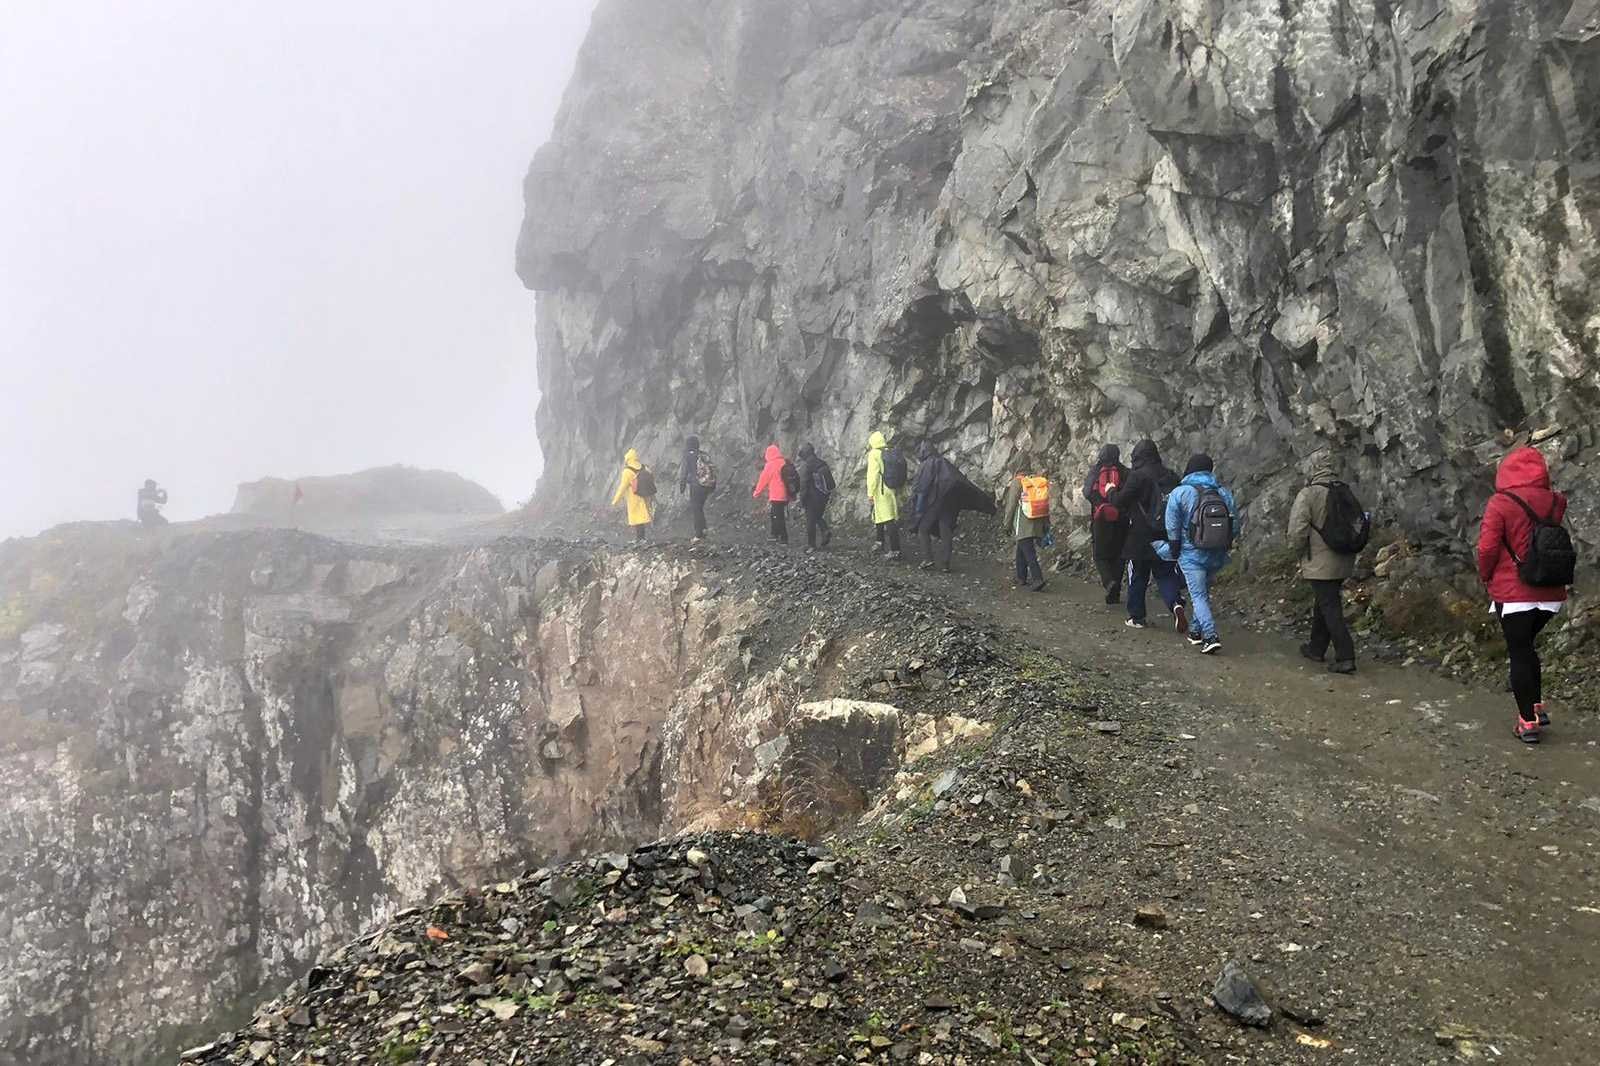 Gümüşhaneli dağcılar dünyanın en tehlikeli yolunda yürüdü #gumushane